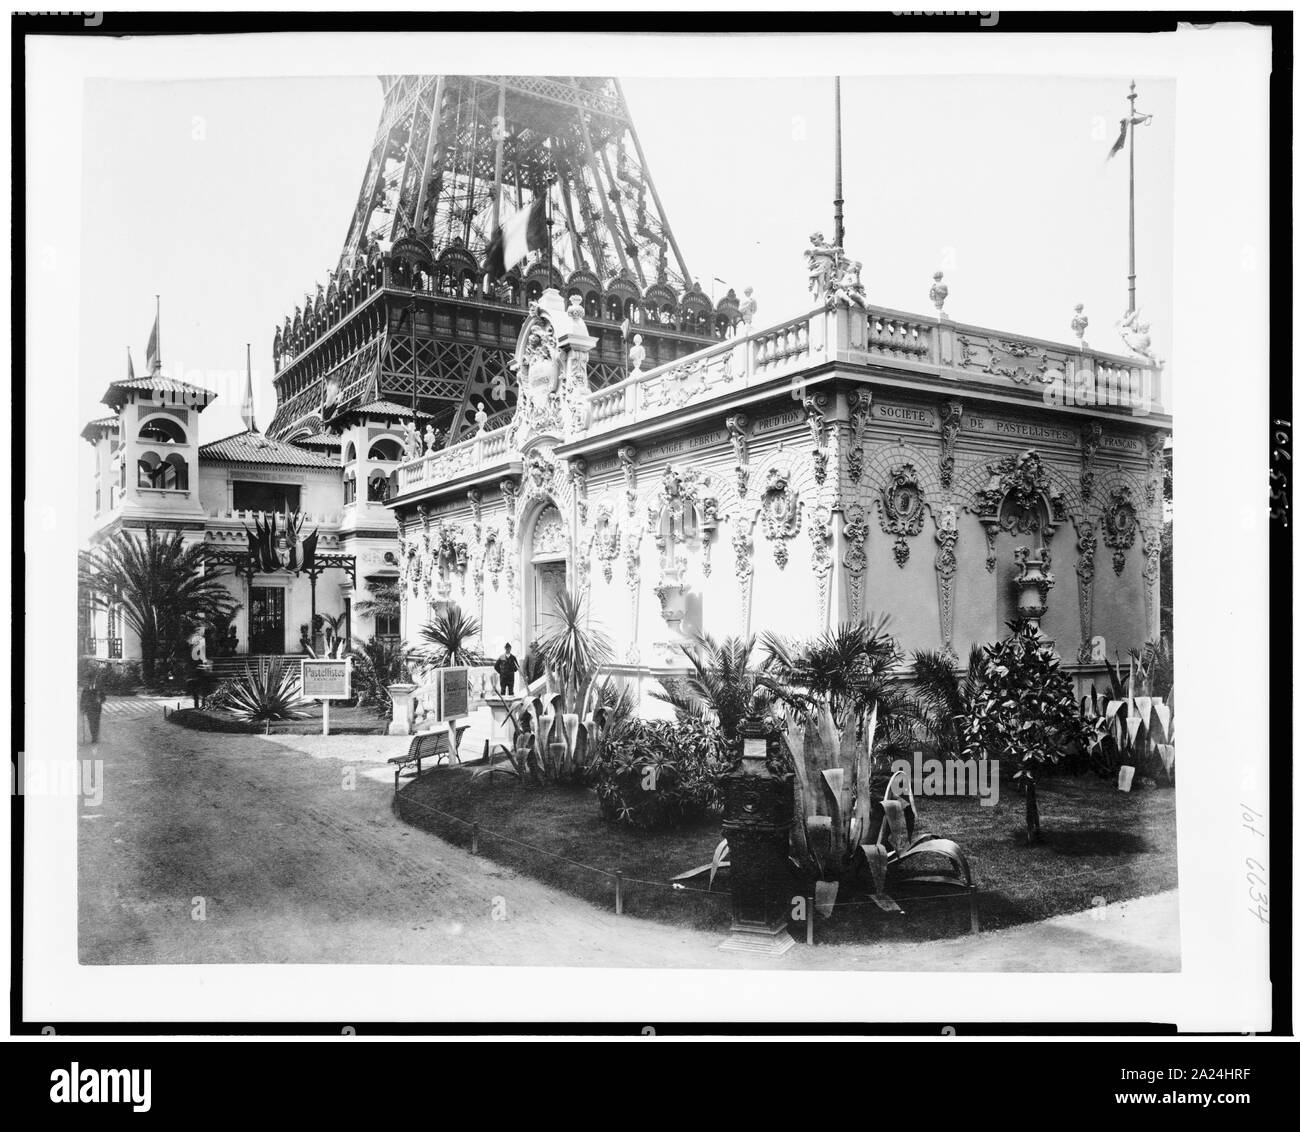 Pavillon der Gesellschaft der Französischen Pastell Künstler, mit dem unteren Abschnitt der Eiffel Turm im Hintergrund, und der Pavillon von Monaco, Paris Exposition, 1889 Stockfoto